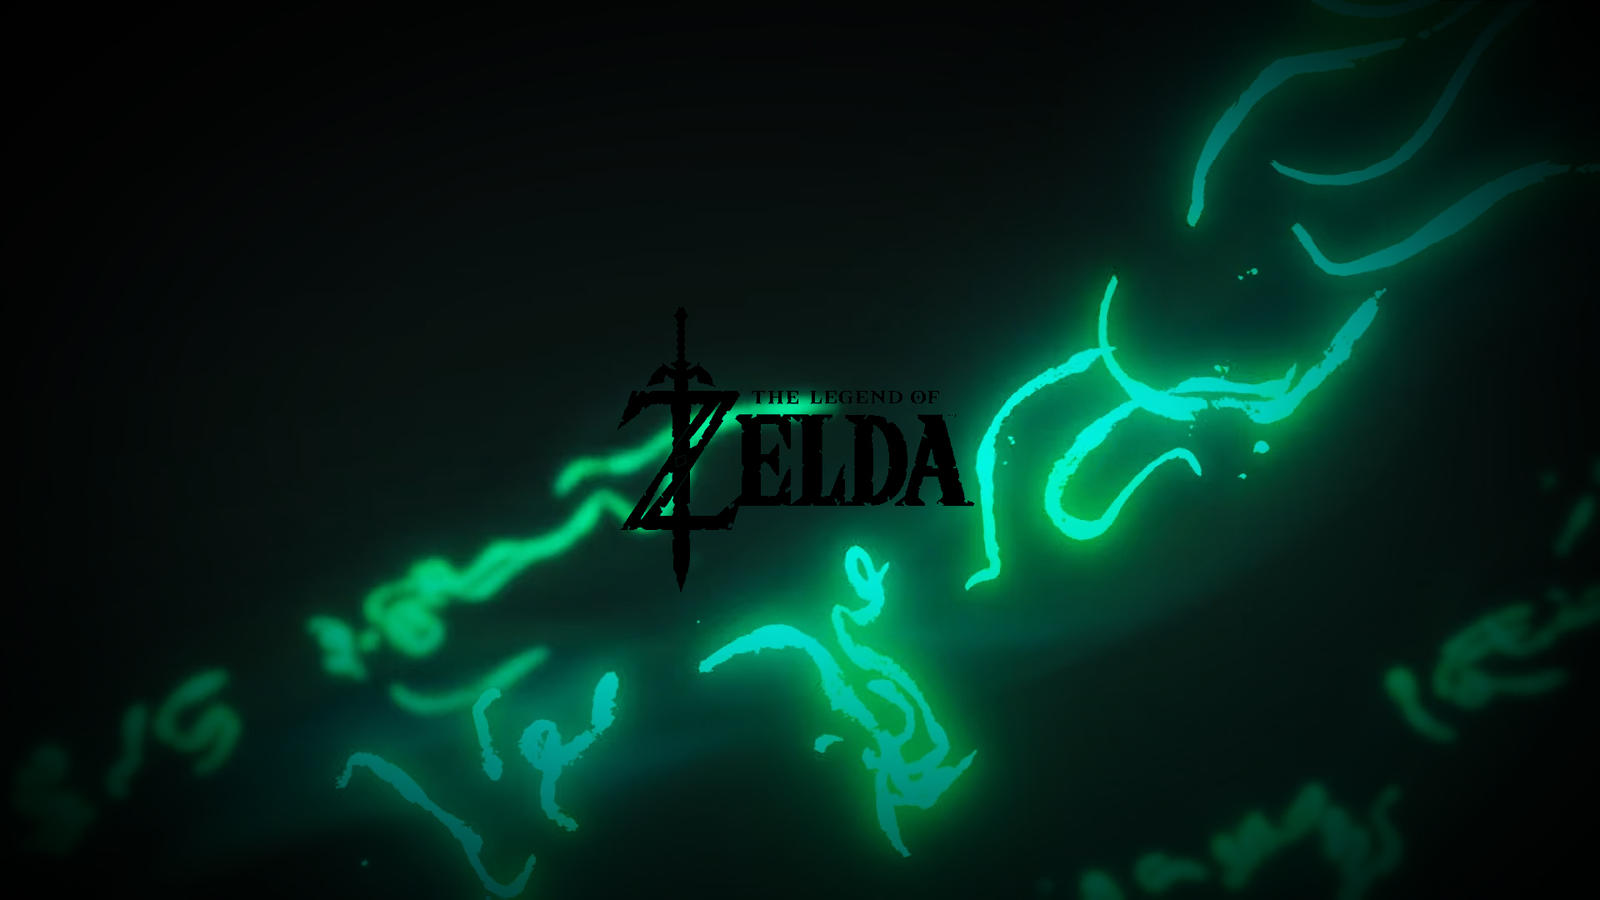 The Legend of Zelda - Tears of the Kingdom by SwedenLena on DeviantArt